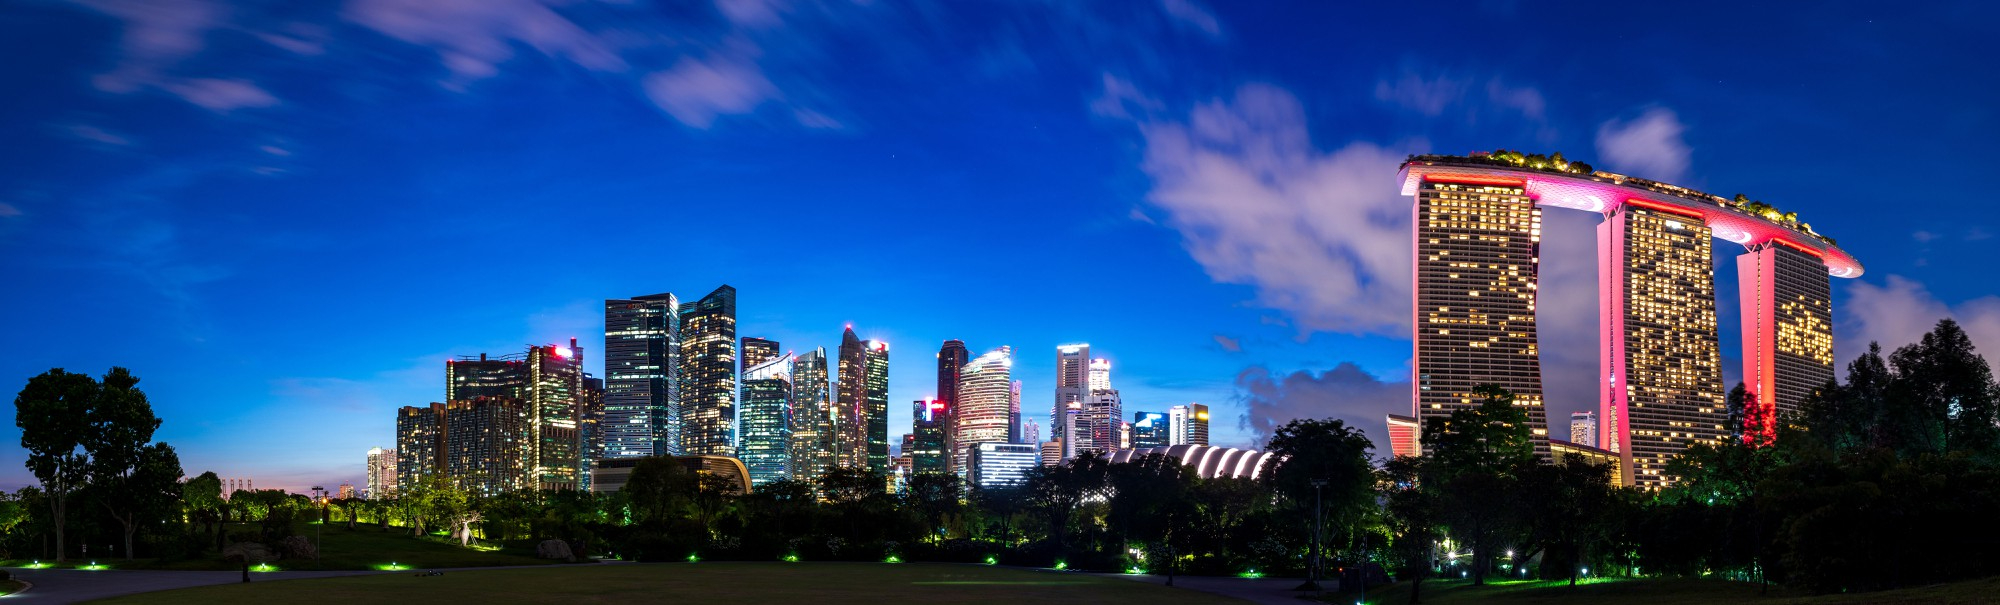 panorama-singapore-skyline